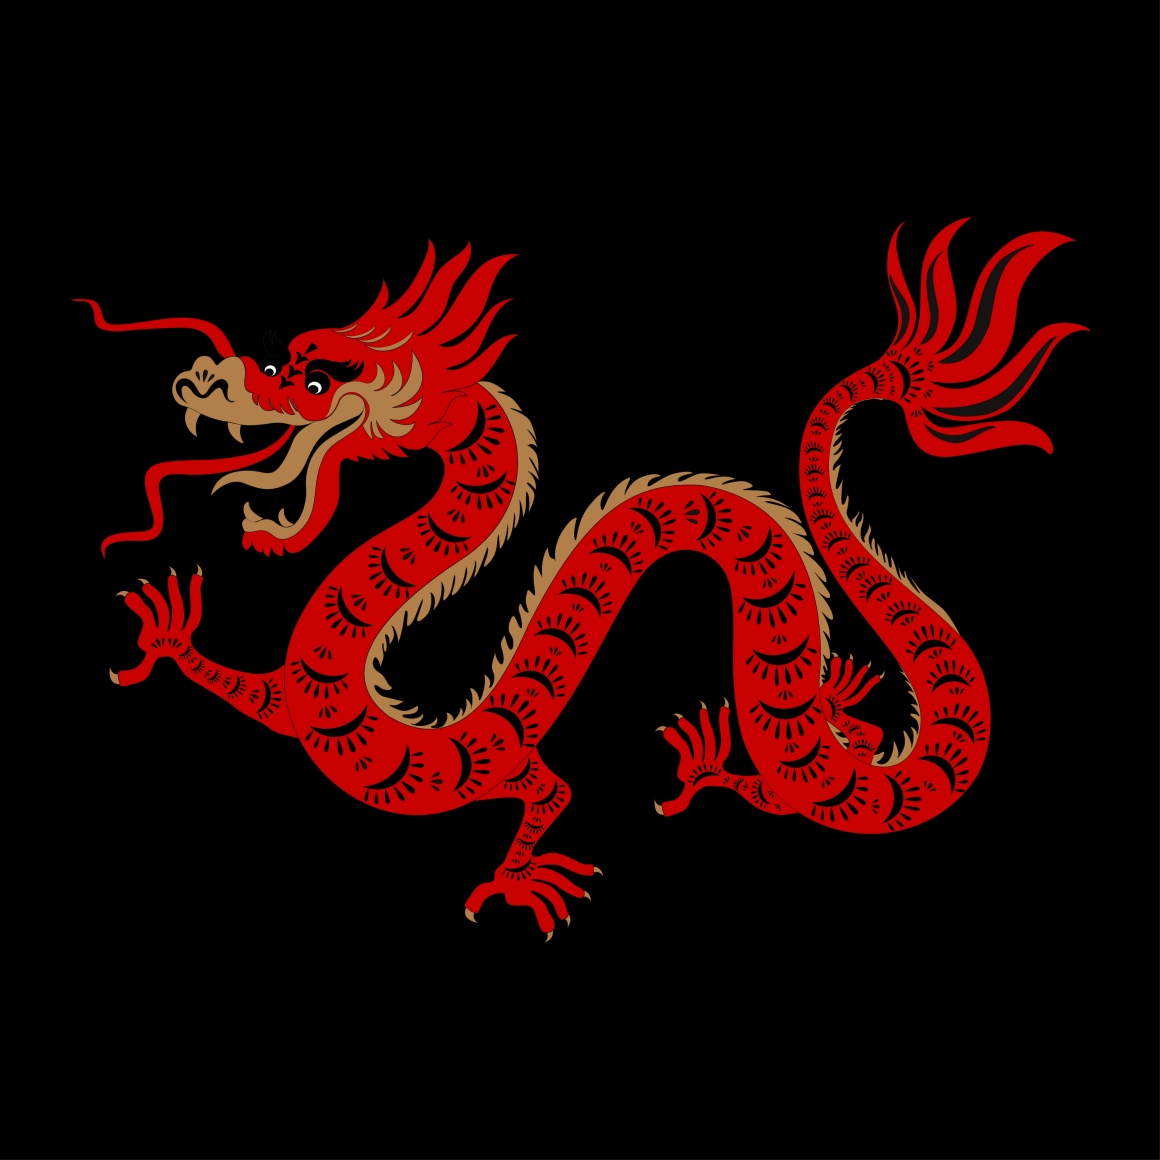 Ein Bild von einem chinesischen Drachen